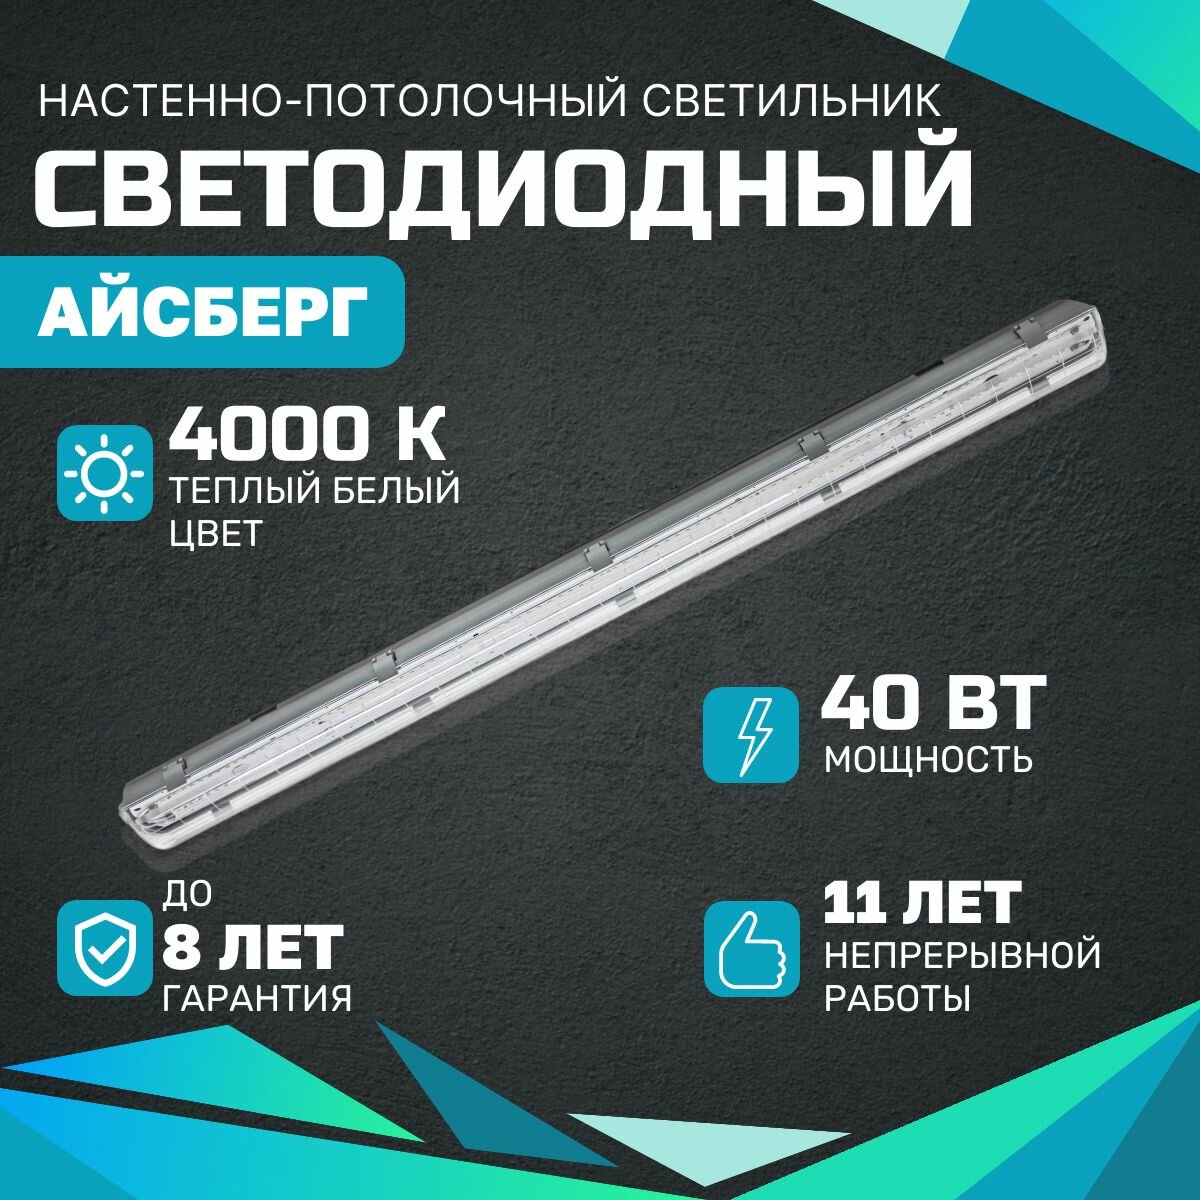 Cветодиодный светильник всесветодиоды Aйcбeрг 40 Bт, 5000Лм, IP65, 4000-4500К, Прозрачный, накладной